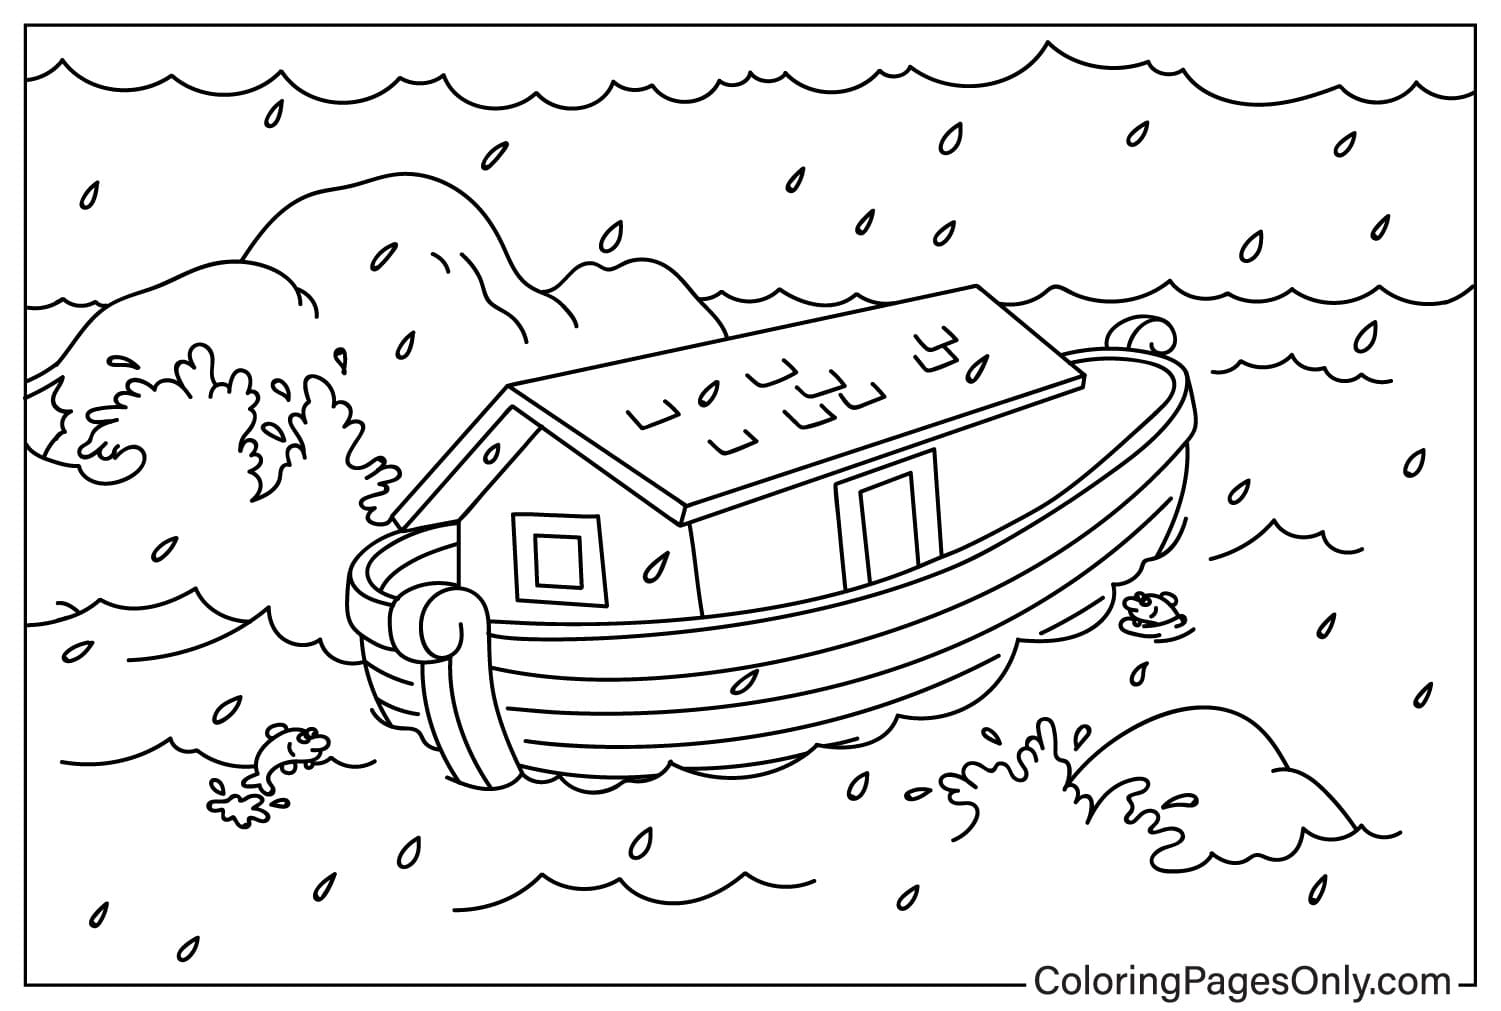 L'Arca di Noè sul mare Pagina da colorare dall'Arca di Noè